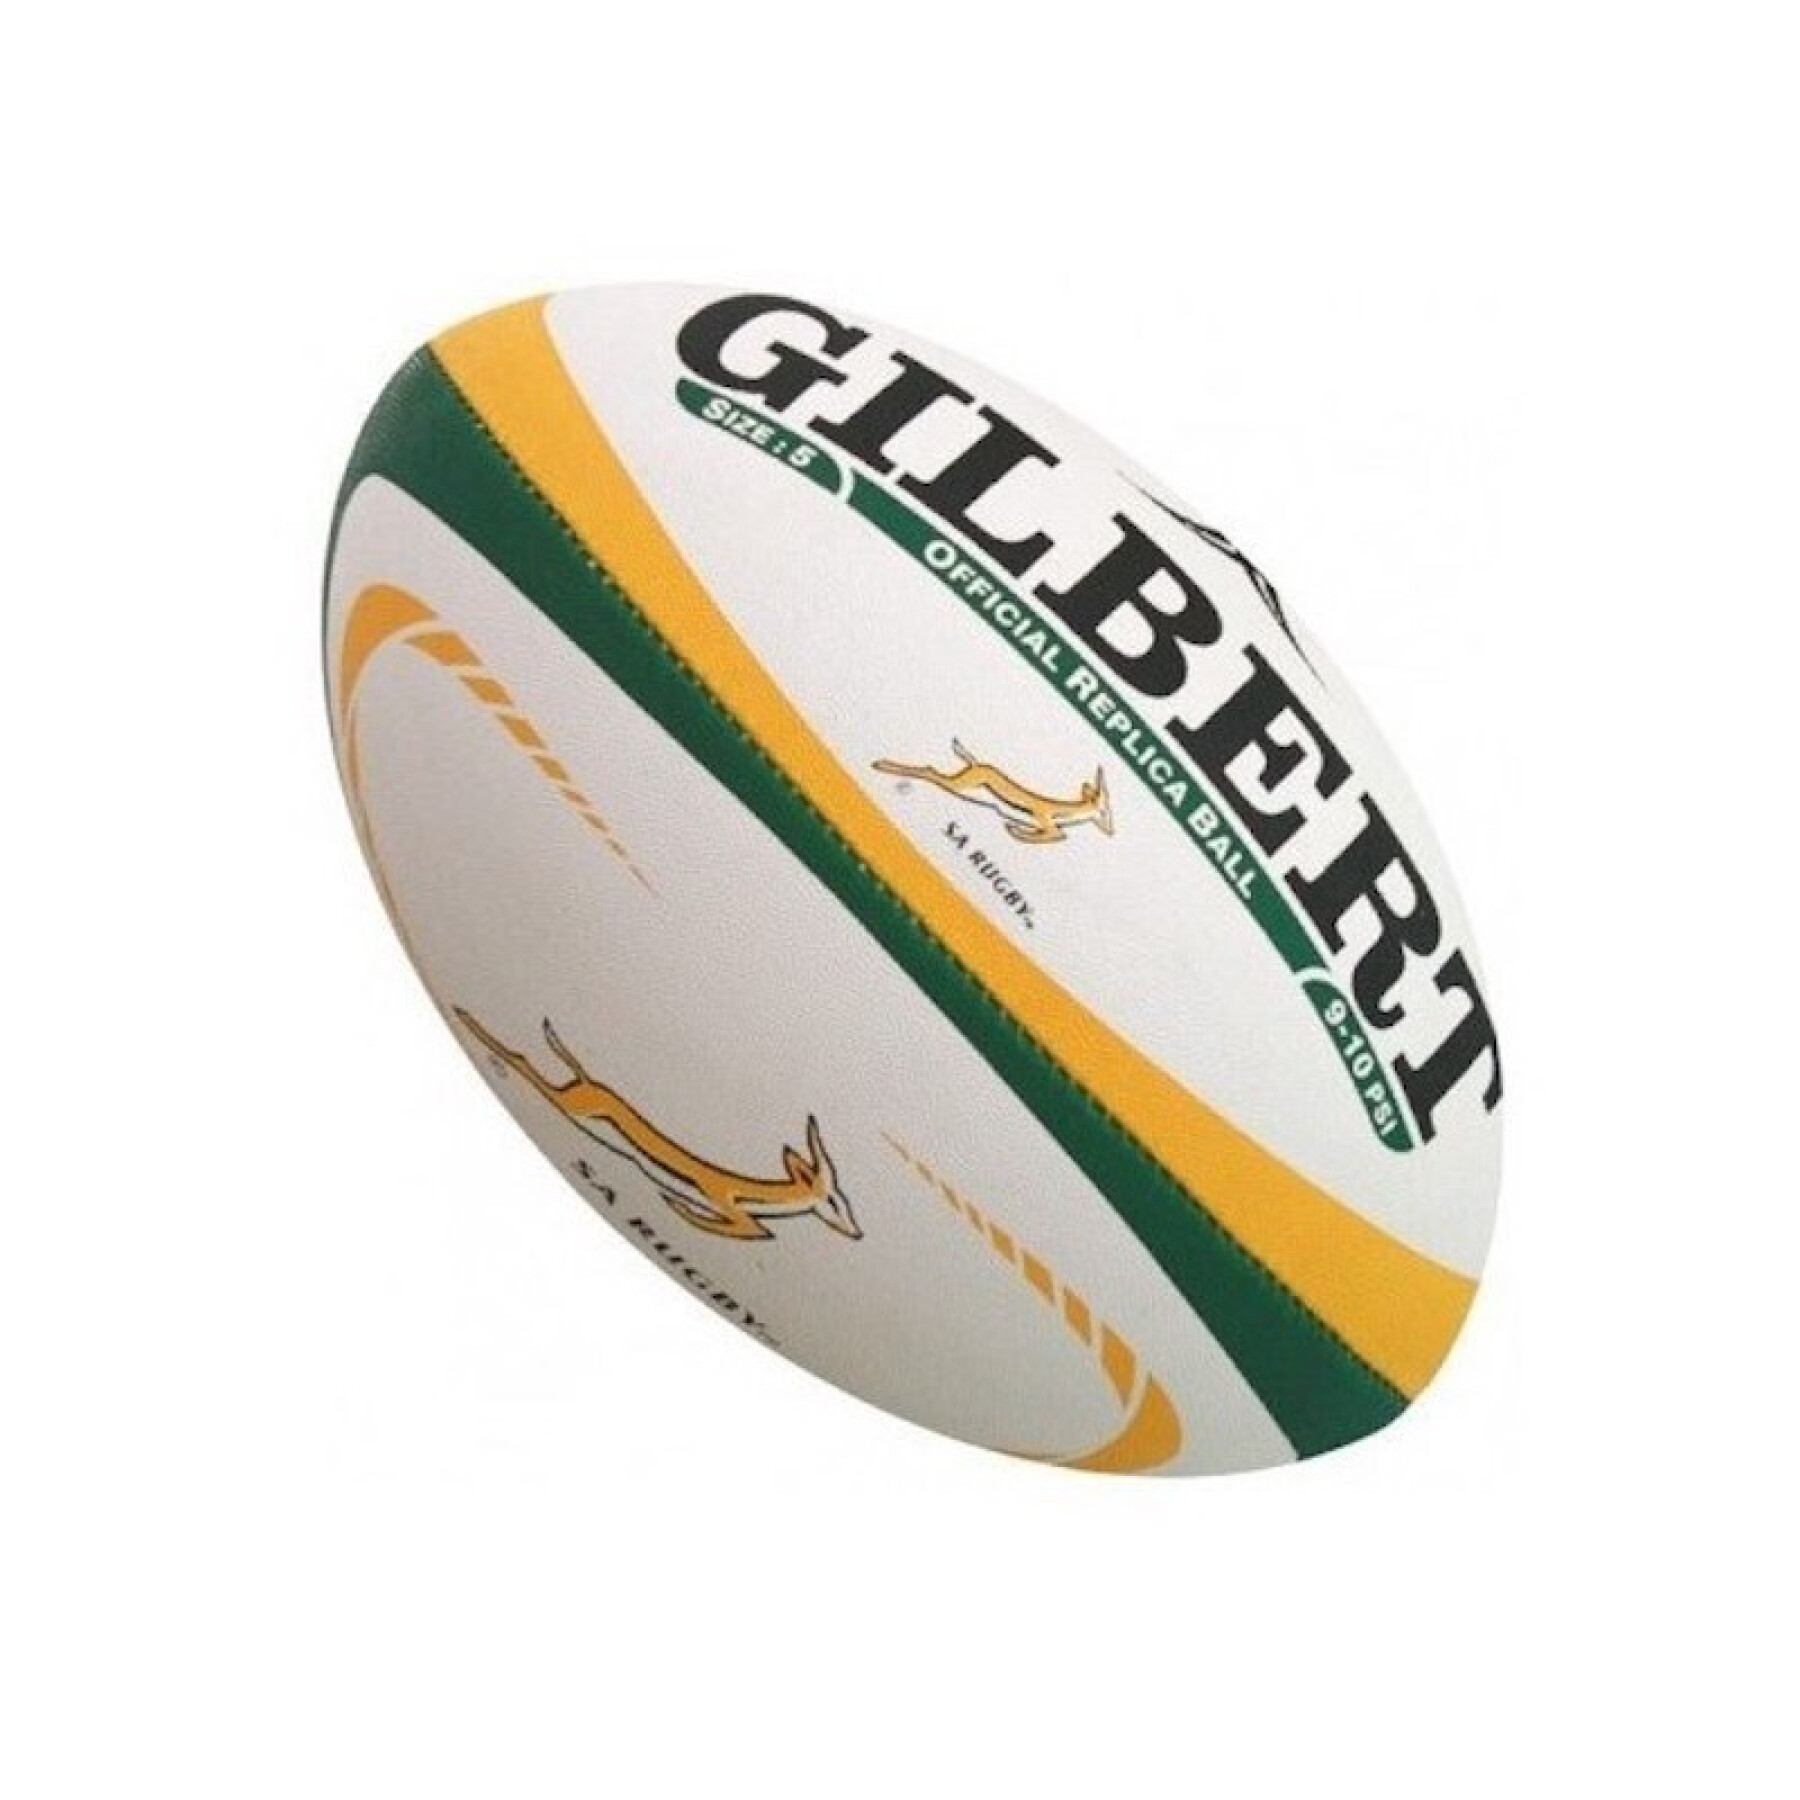 Nachbildung eines Rugbyballs Gilbert Südafrika (Größe 5)